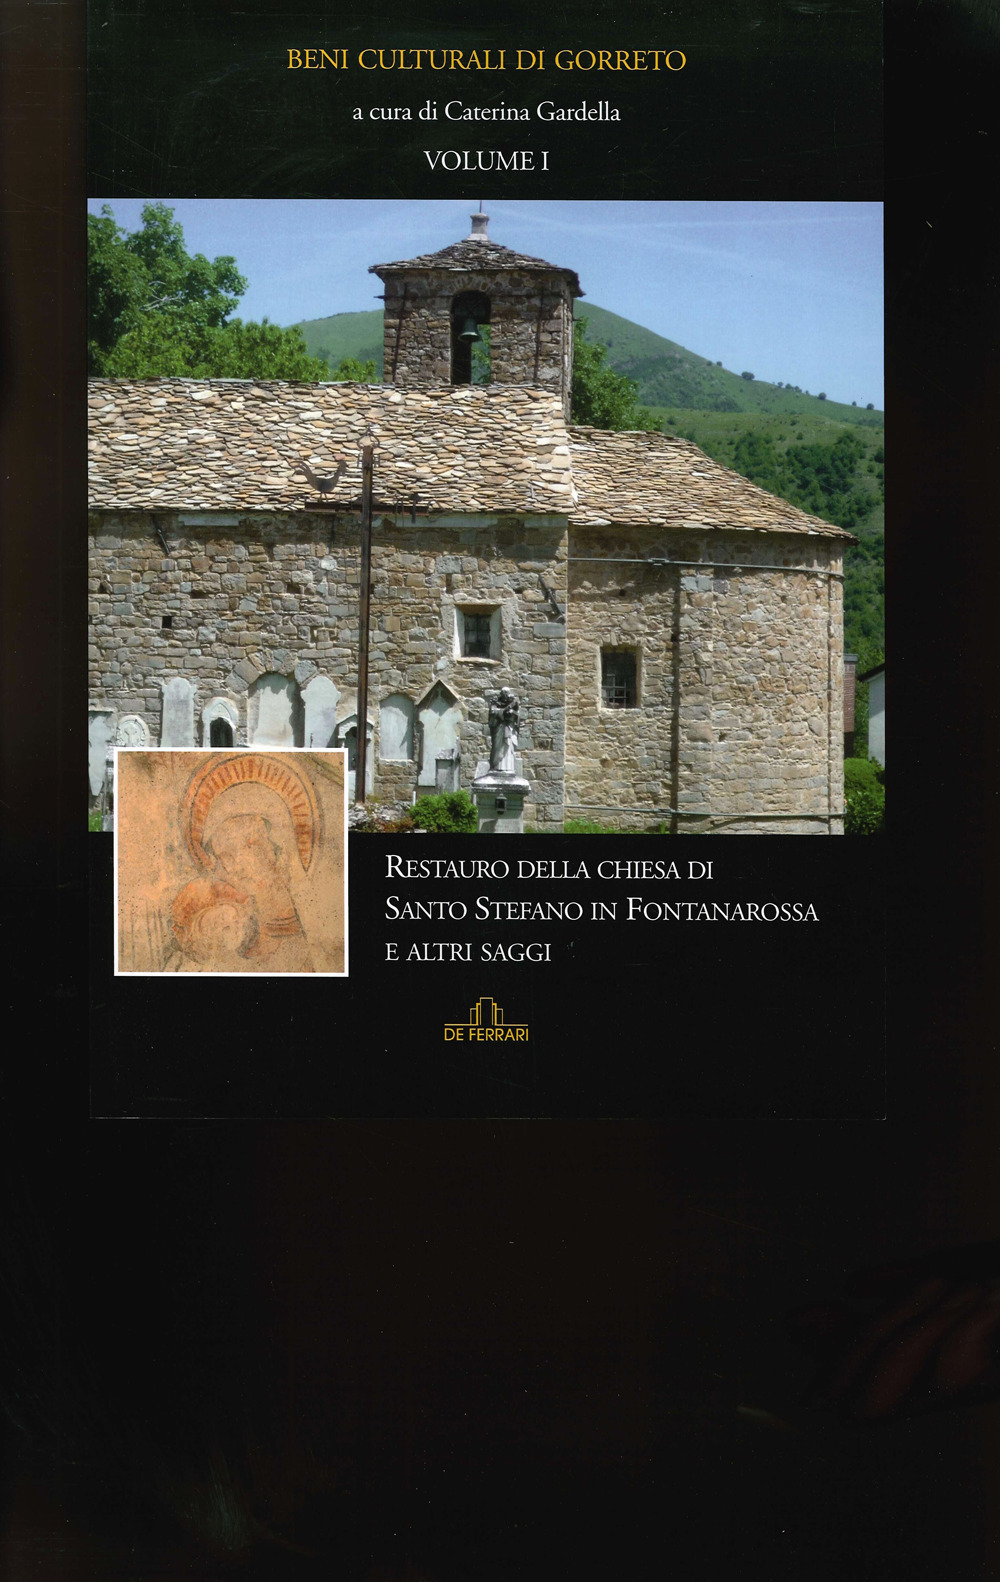 Beni culturali di Gorreto. Vol. 1: Restauro della chiesa di Santo Stefano in Fontanarossa e altri saggi